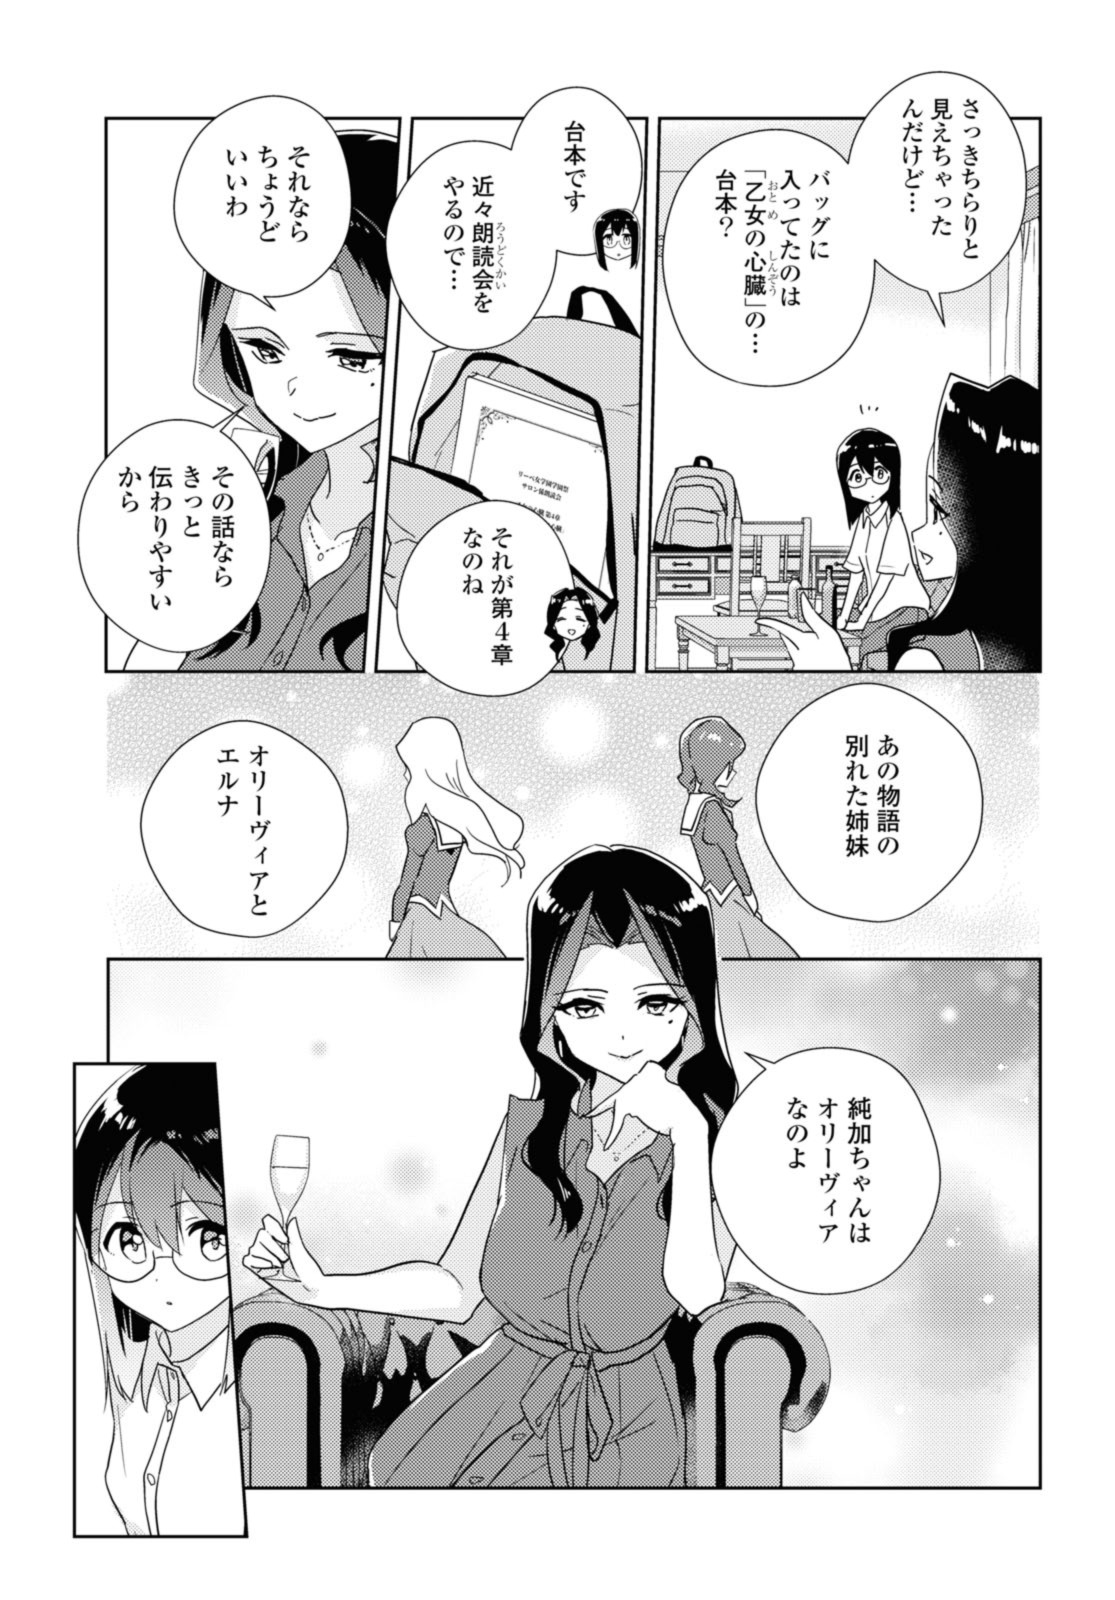 Watashi no yuri wa oshigotodesu! - Chapter 57.2 - Page 1